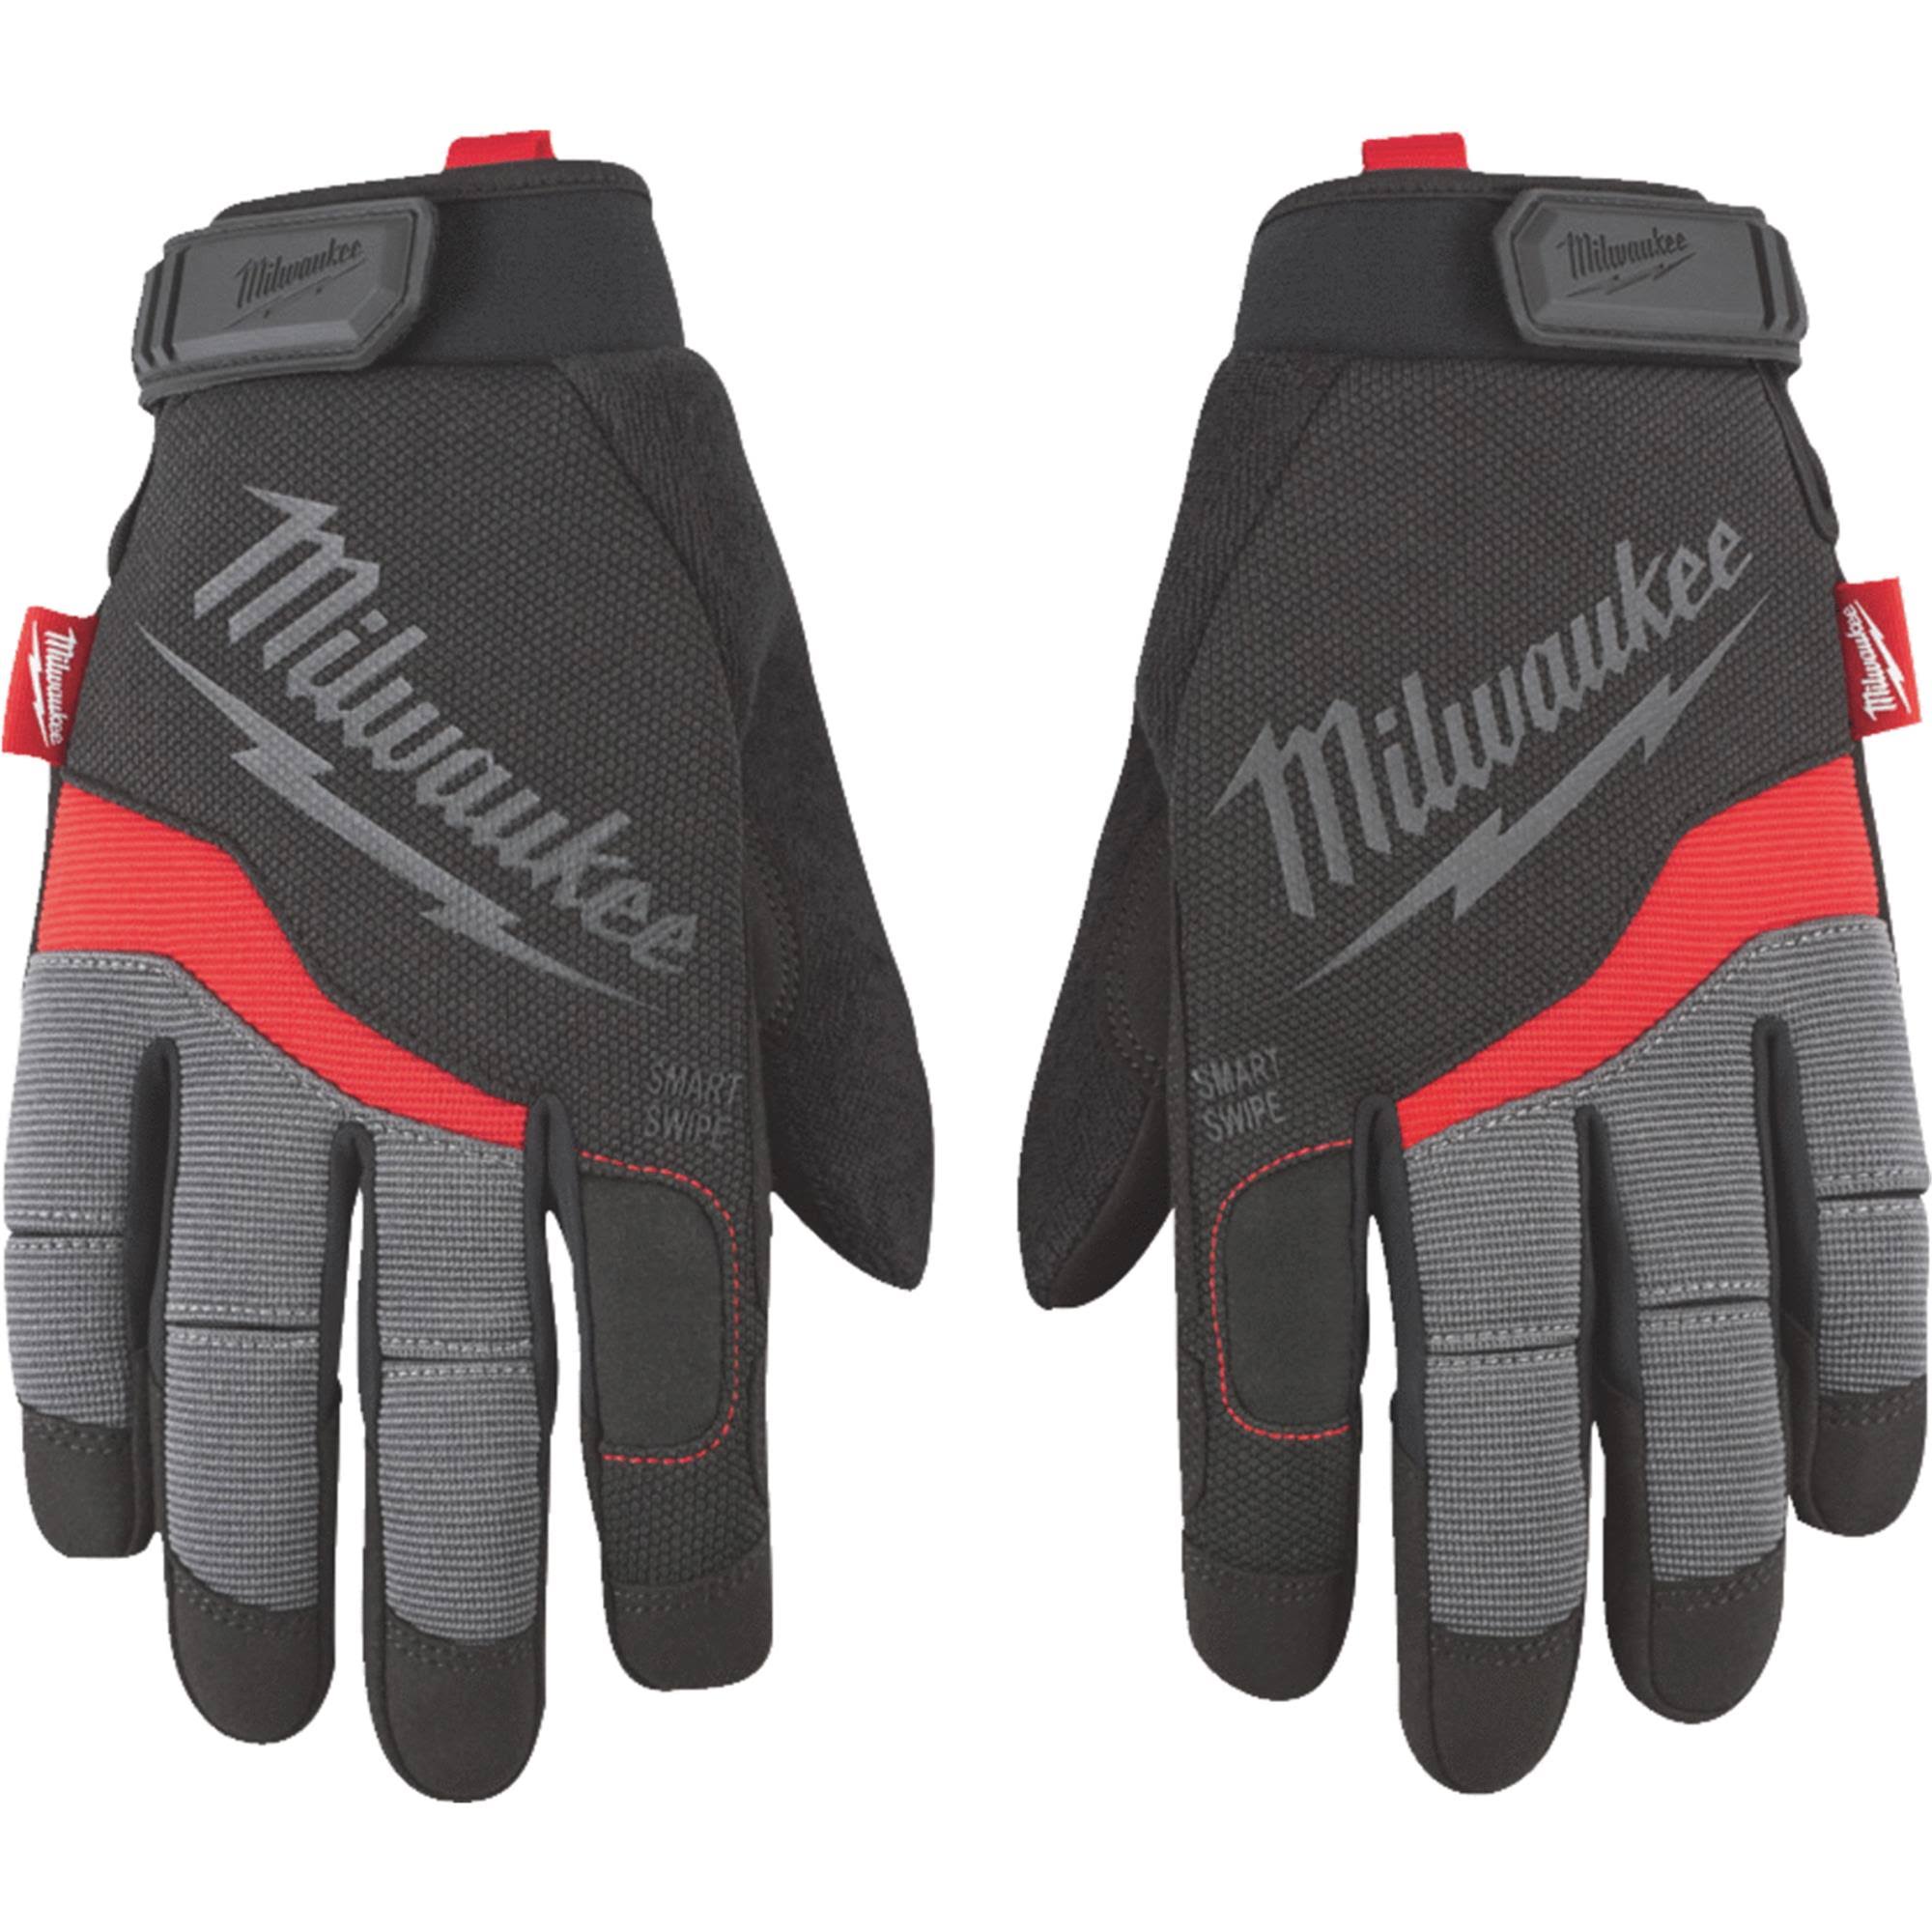 Milwaukee Performance Work Gloves - Black, Large